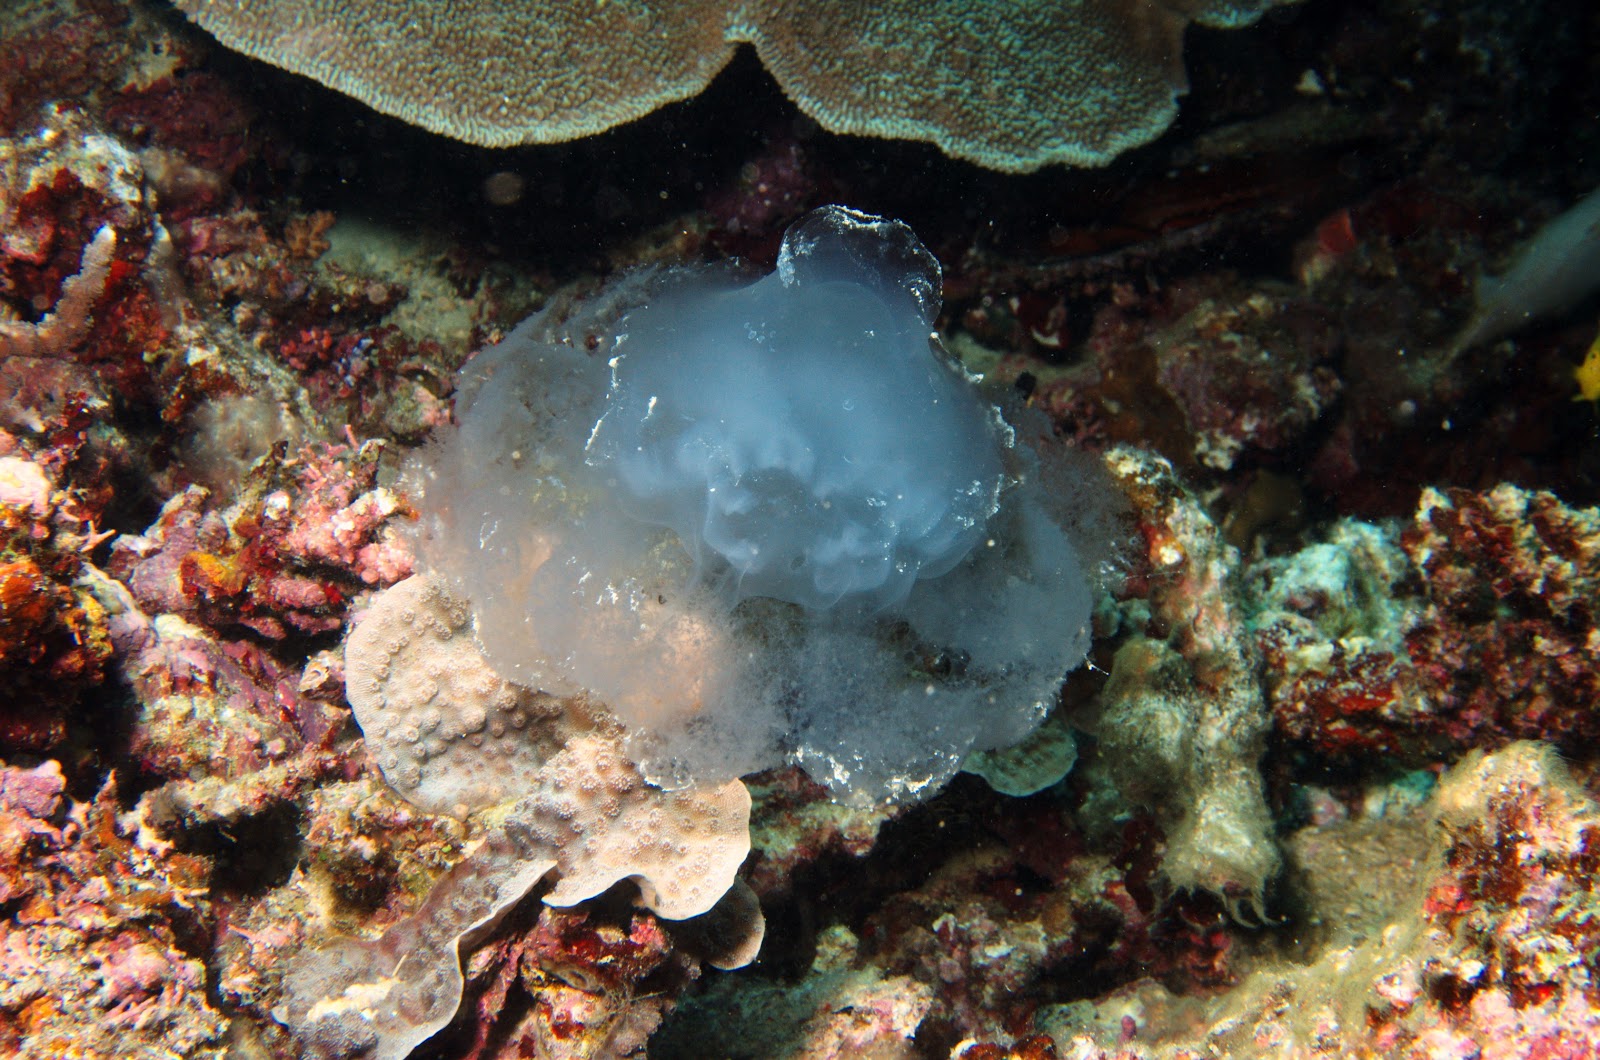 jellyfish in situ